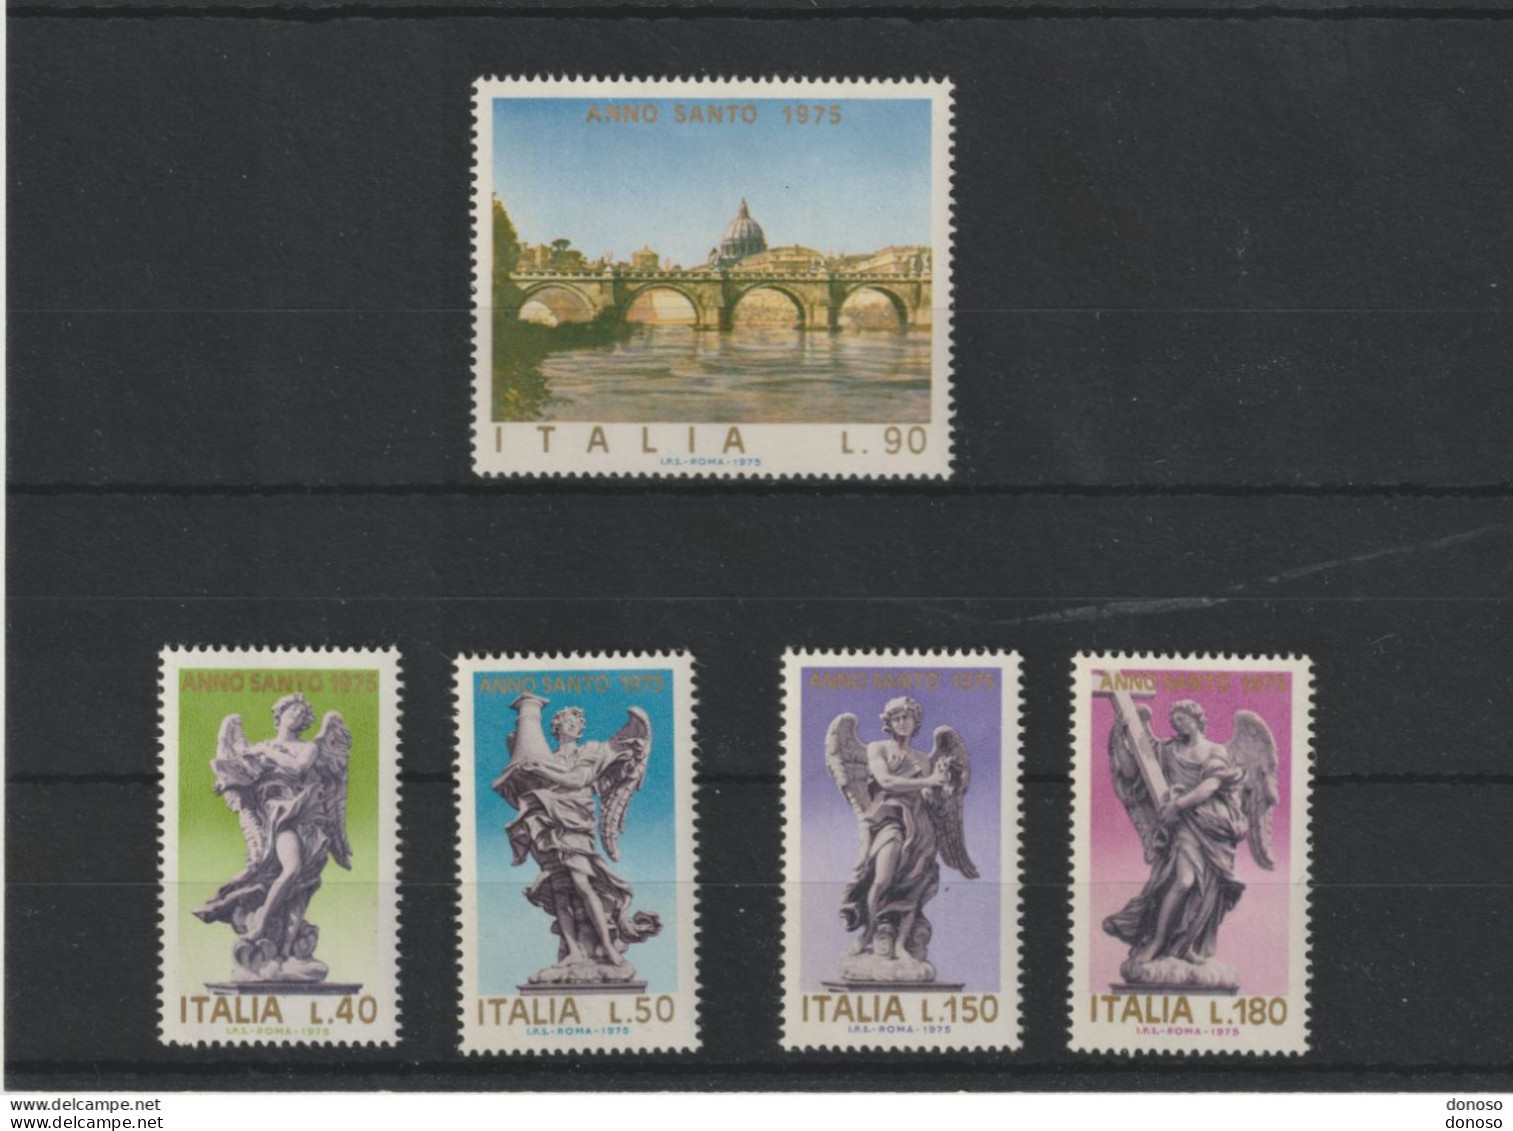 ITALIE 1975 Année Sainte, Pont Saint Ange Et Sculptures D'anges Yvert 1211-1215, Michel 1478-1482 NEUF** MNH - 1971-80: Ungebraucht